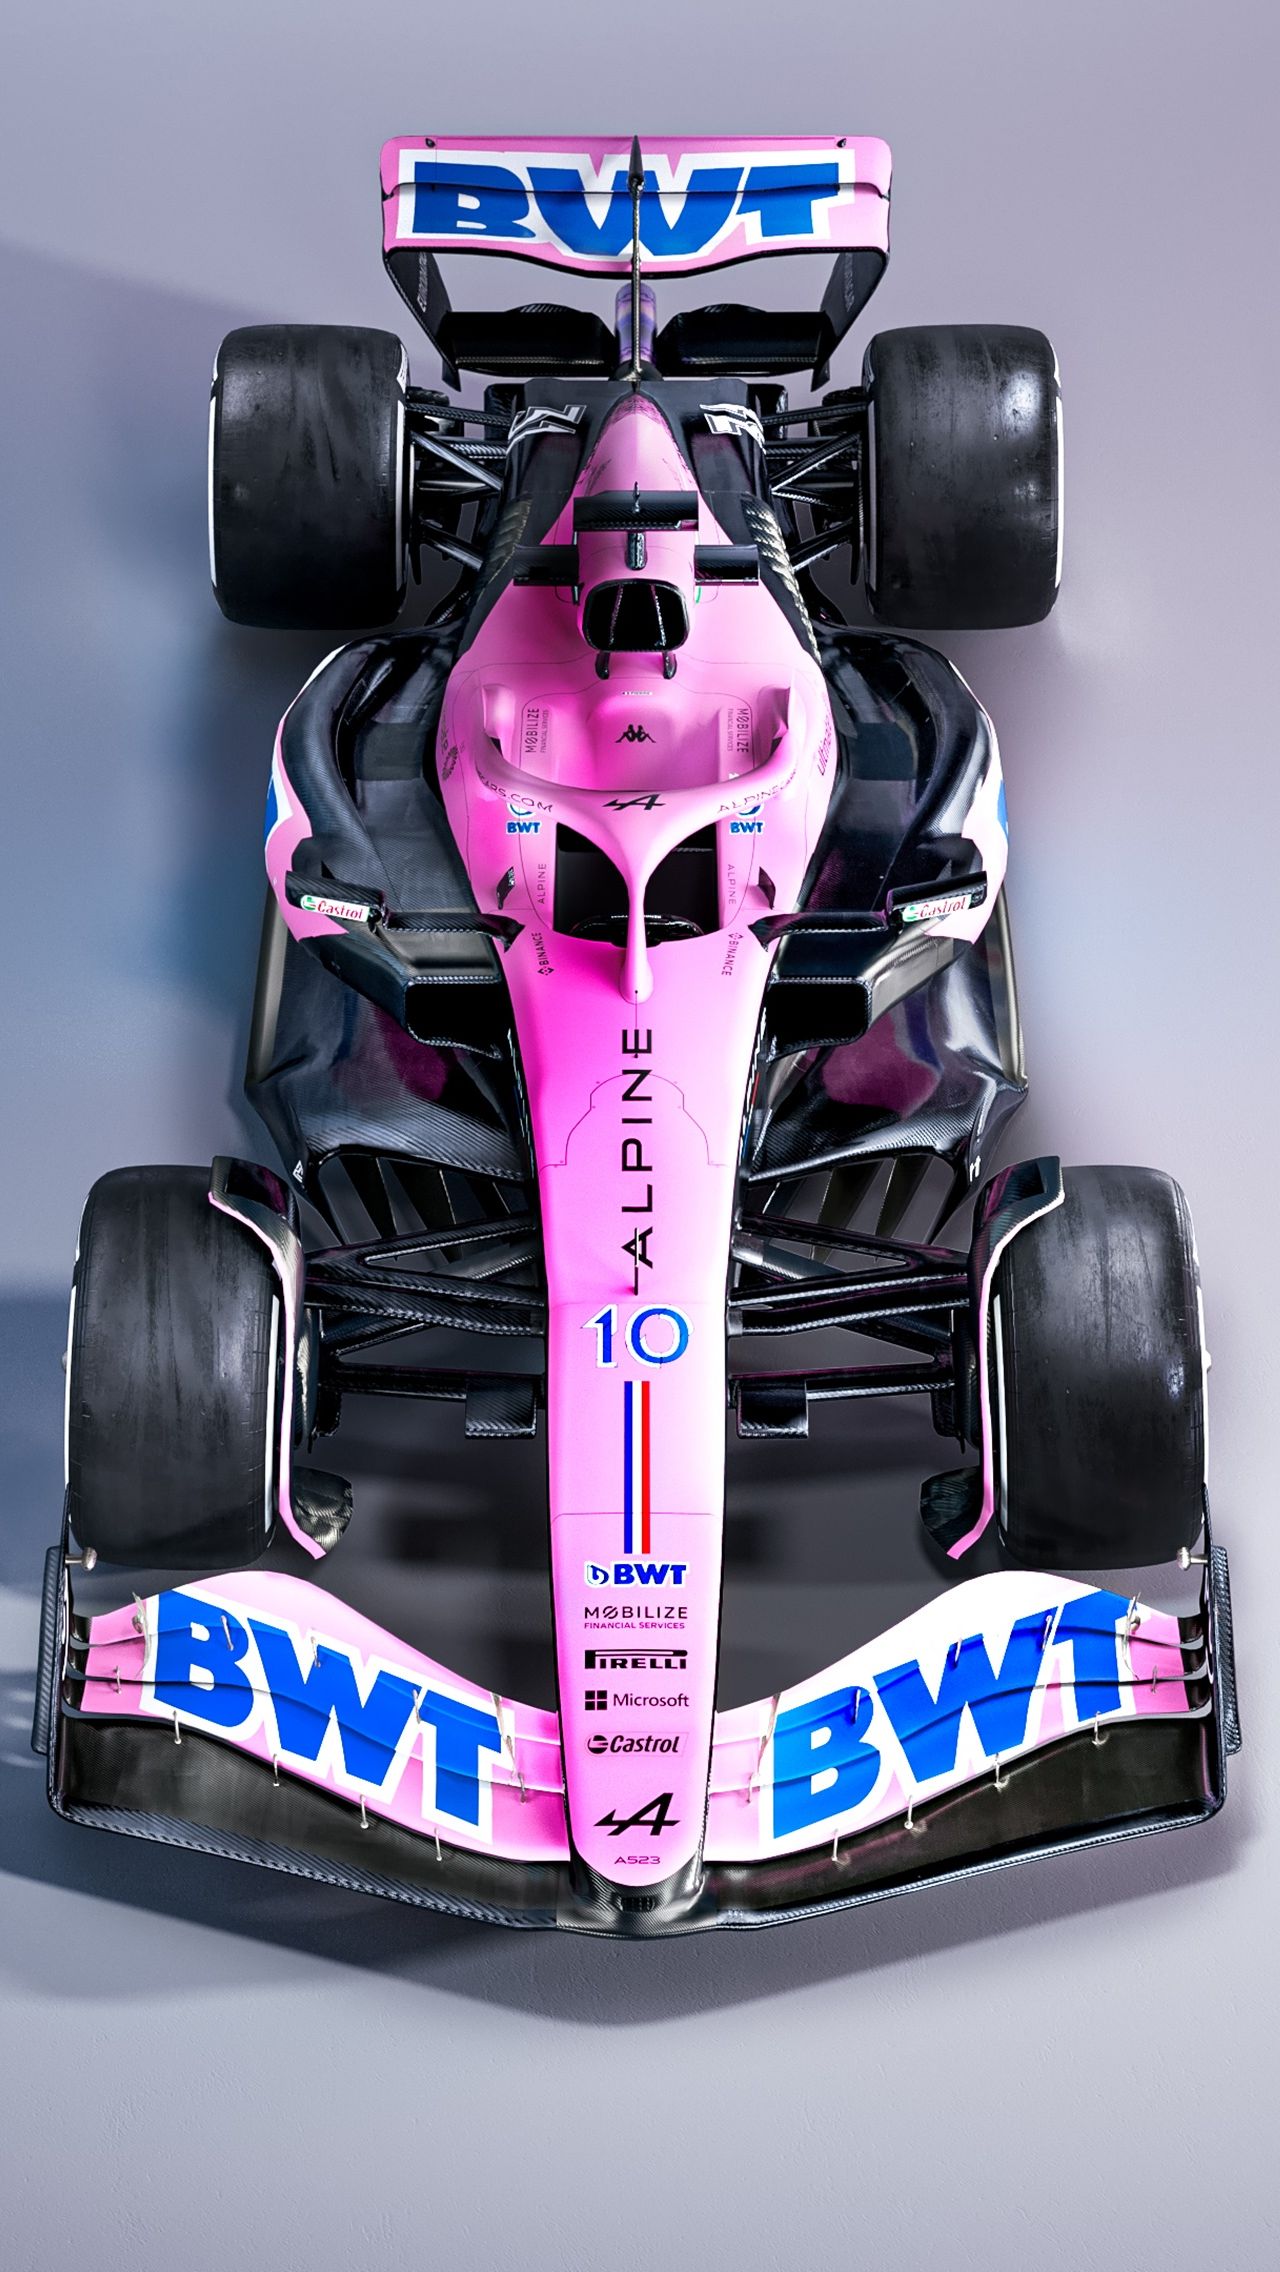 И всё же французам удалось нас удивить: на трёх стартовых Гран-при они будут использовать розовую ливрею в честь титульного спонсора BWT.